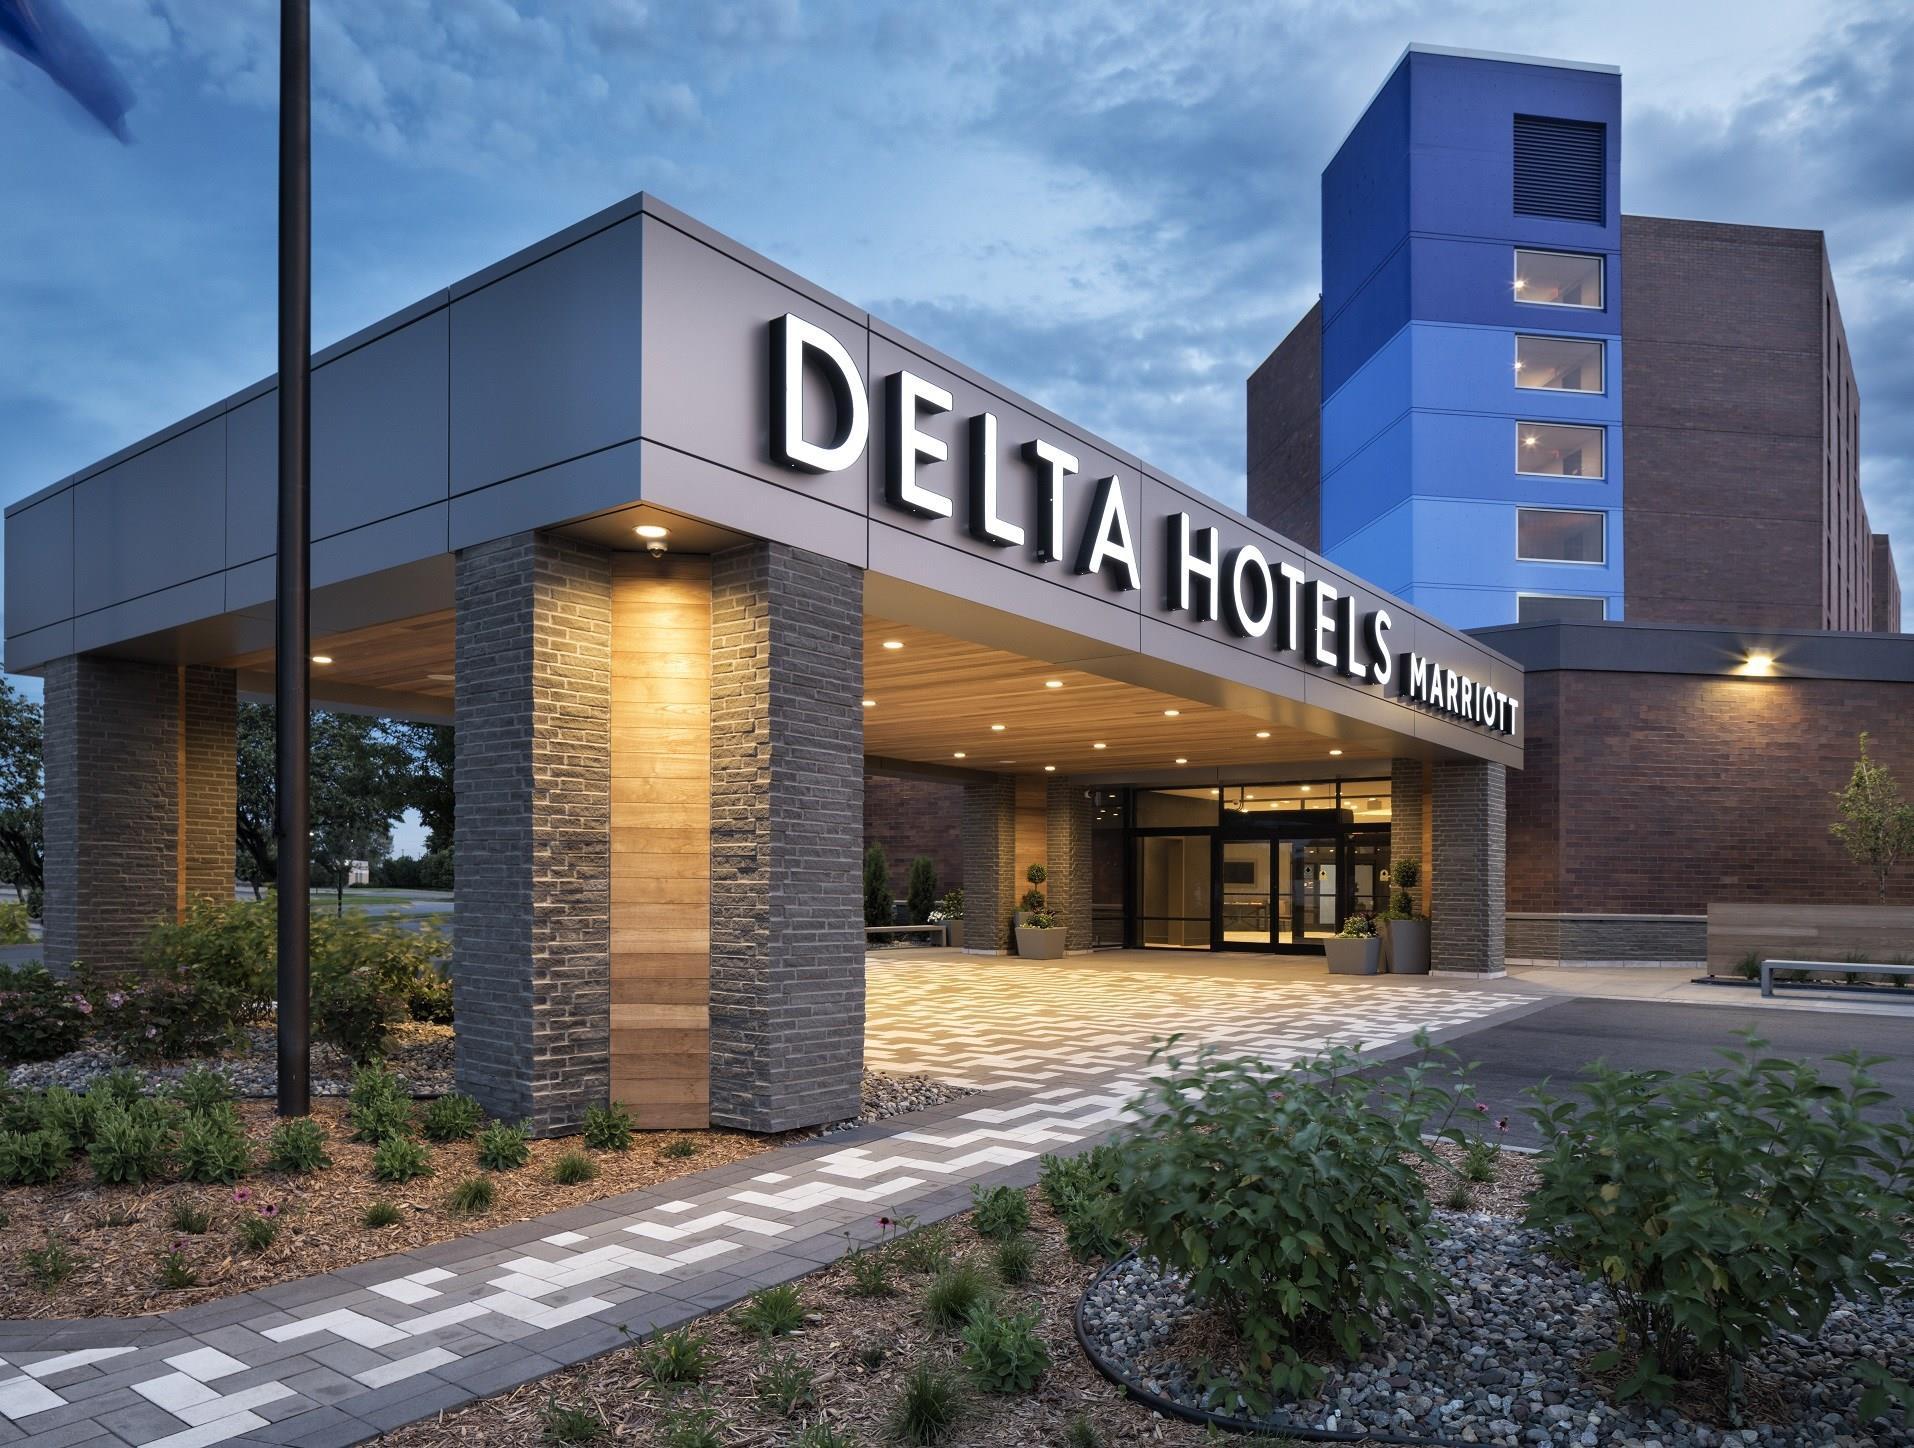 Delta Hotels Minneapolis Northeast in Minneapolis, MN